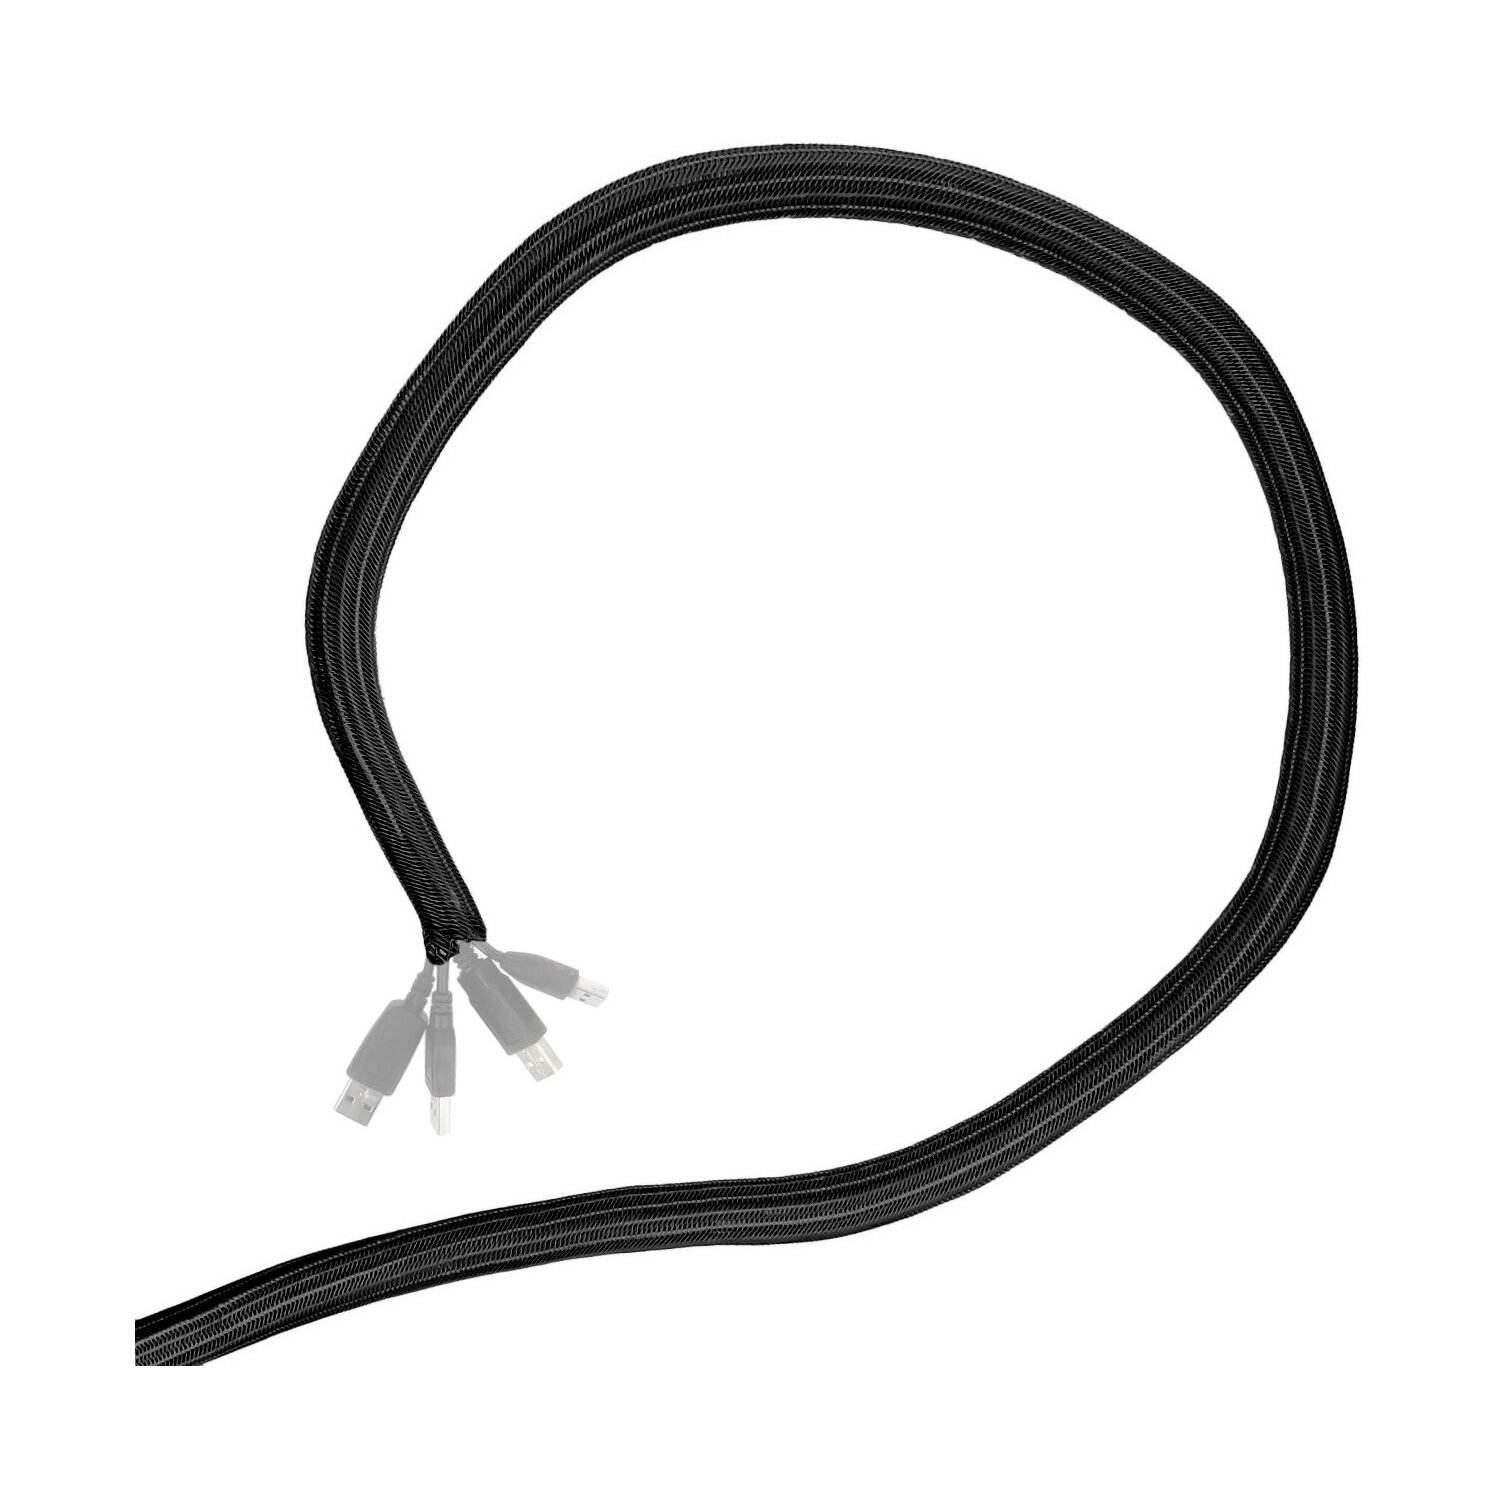 https://www.impulsfoto.de/media/image/product/15603/md/minadax-gewobener-selbstschliessender-5-meter-profi-kabelschlauch-kabelkanal-25mm-innendurchmesser-in-schwarz-fuer-flexibles-kabelmanagement.jpg